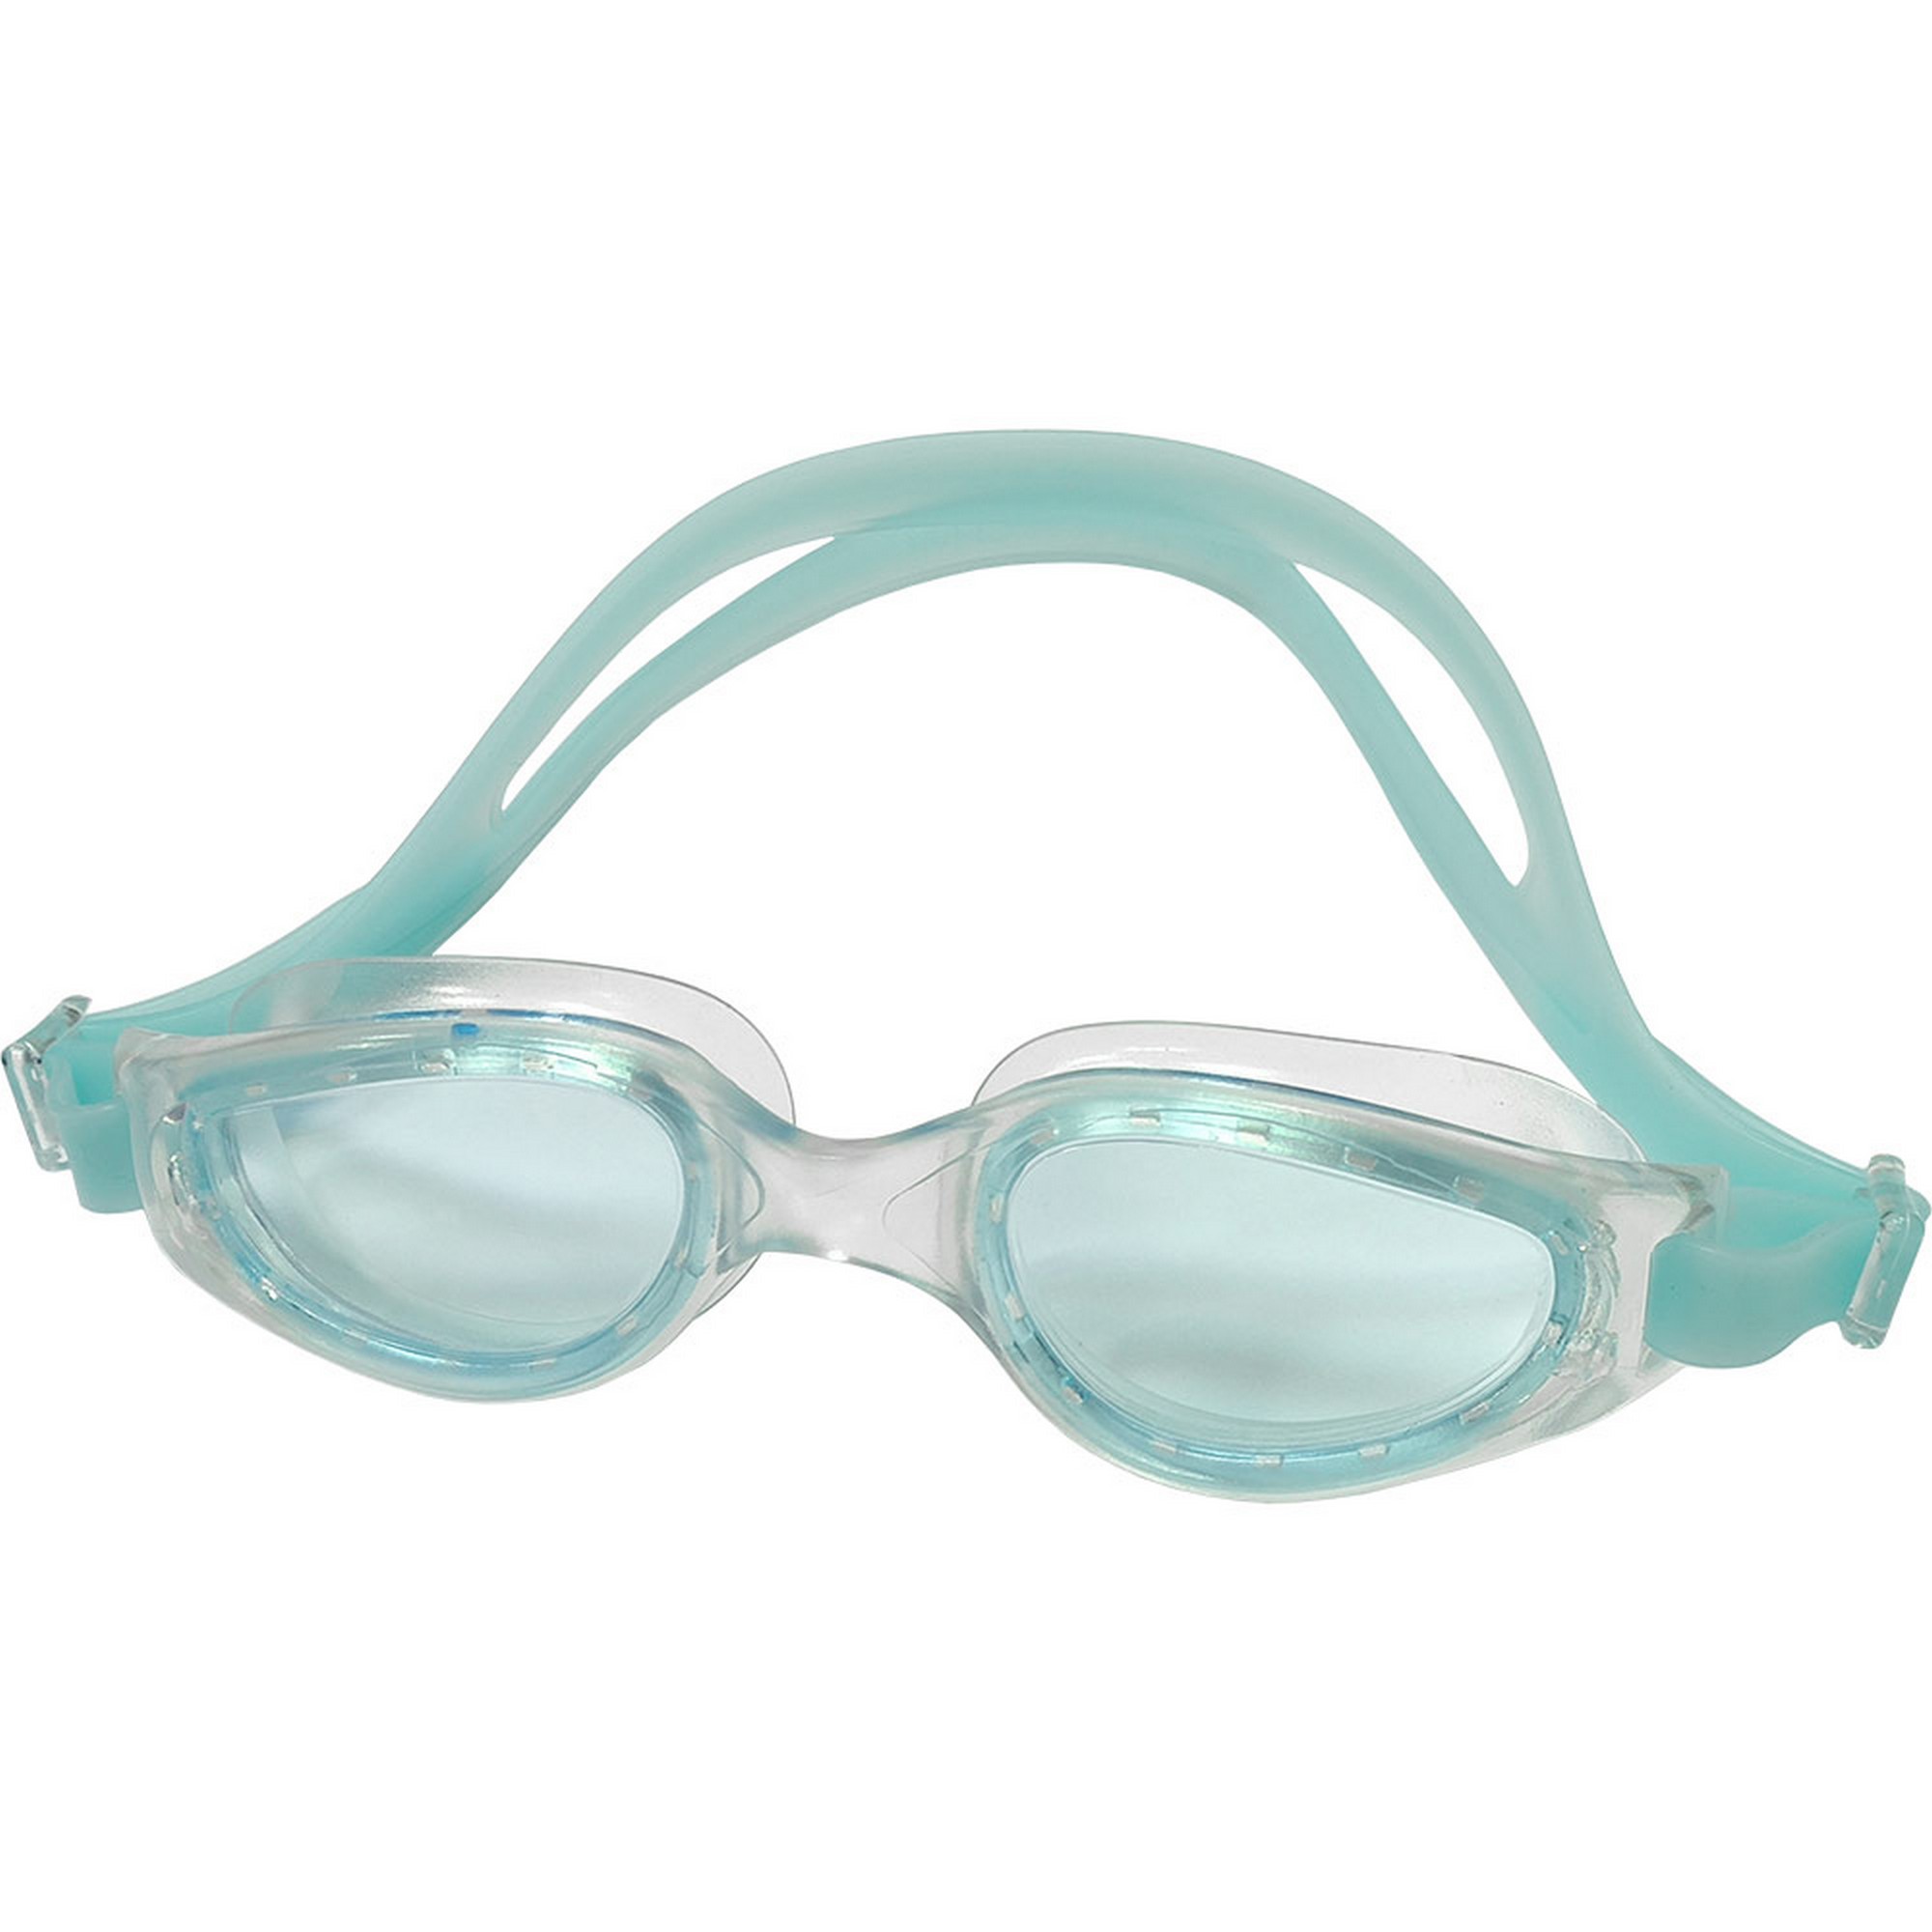 Очки для плавания взрослые Sportex E39674 аквамарин,  - купить со скидкой